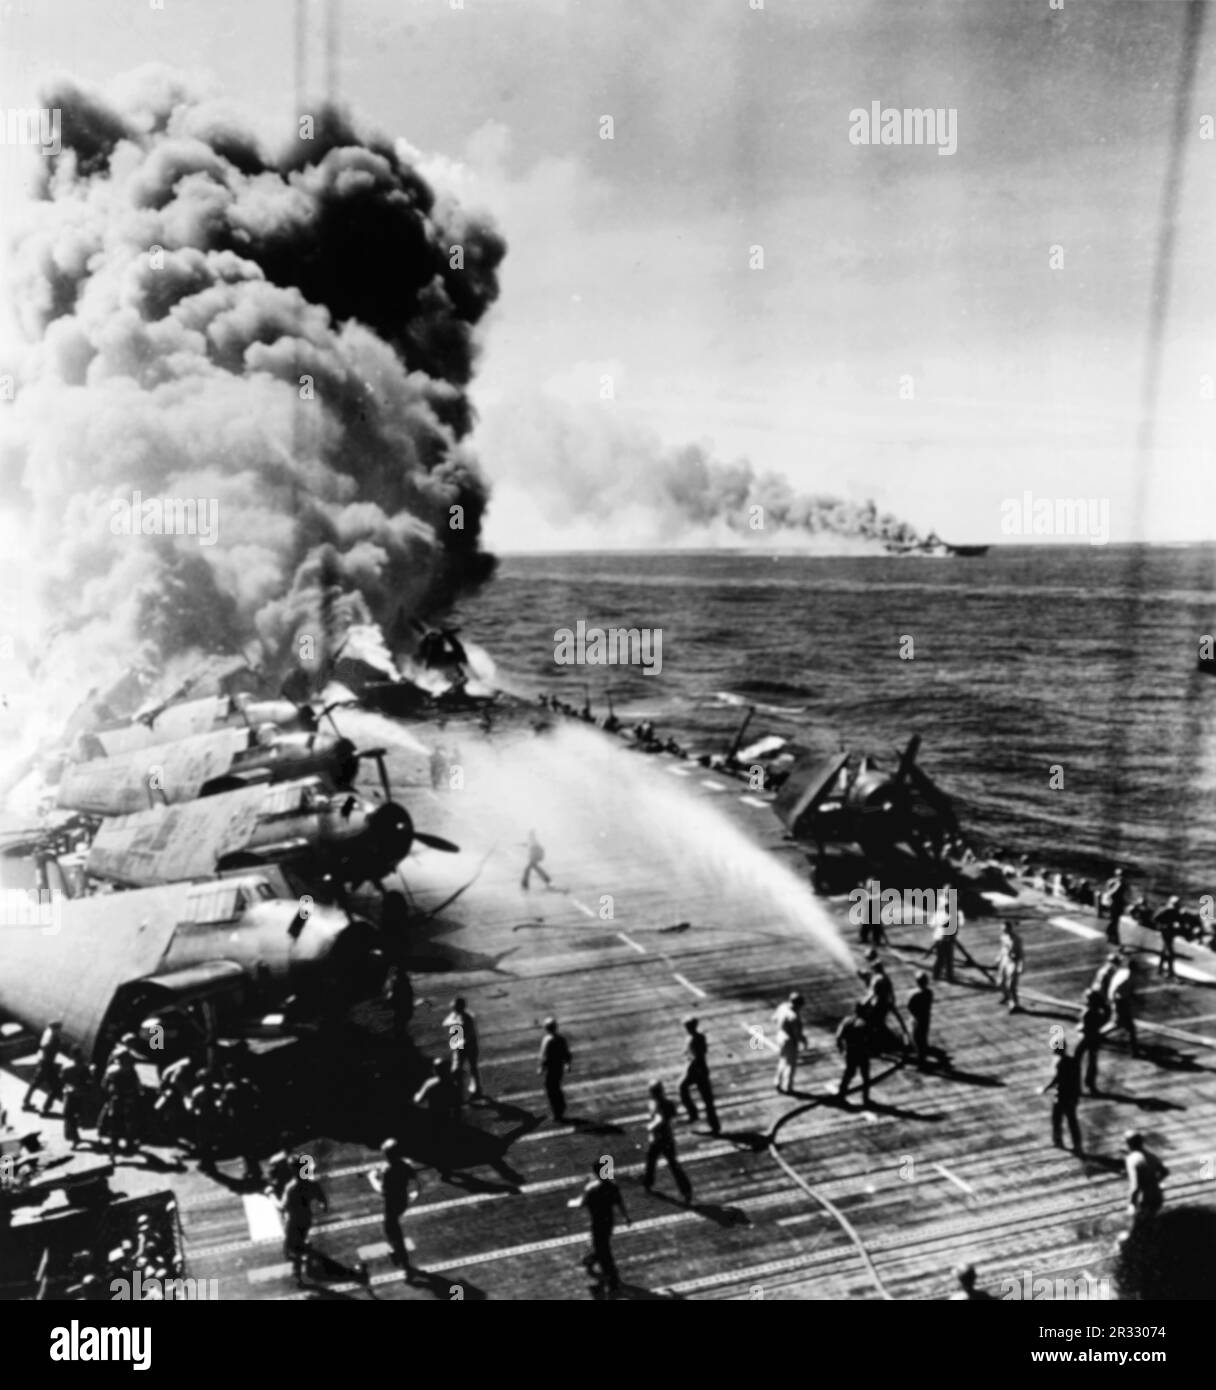 États-Unis Le porte-avions léger USS Belleau Wood (CVL-24) de la Marine a brûlé en arrière après avoir été frappé par un kamikaze, alors qu'elle a été en opération au large de Luzon, aux Philippines, le 30 octobre 1944. Les membres de équipage du pont de vol déplacent les avions Grumman TBM Avenger intacts du Torpedo Squadron 21 (VT-21) loin des flammes tandis que d'autres combattent les incendies. L'USS Franklin (CV-13), également touché lors de cette attaque de Kamikaze, est à l'écart. Banque D'Images